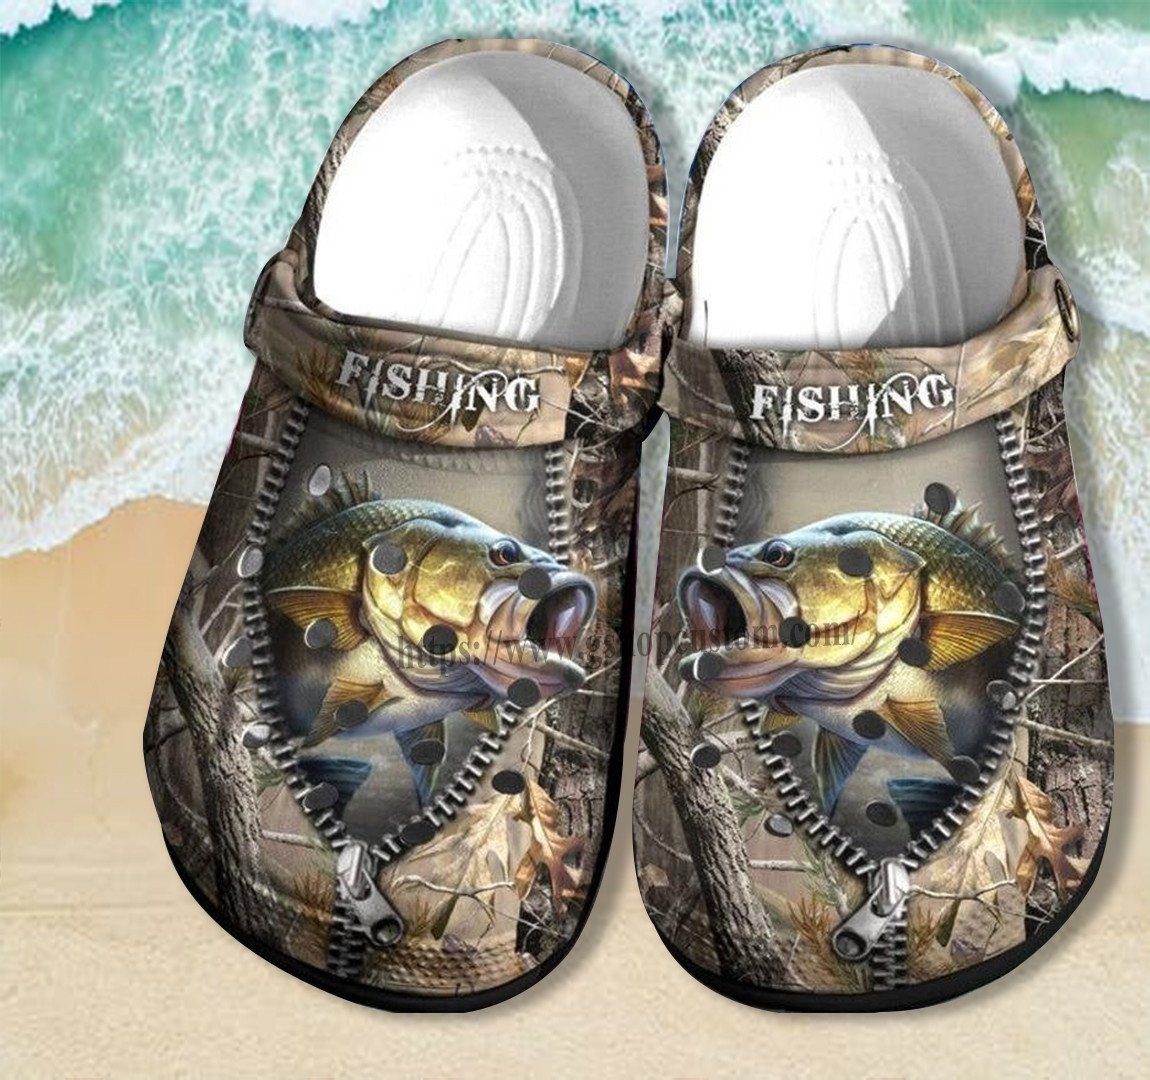 Father Day 2022 Bass Fishing Camping Crocs Shoes Gift Men - Camo Jungle Fishing Shoes Croc Clogs Grandpa Gift